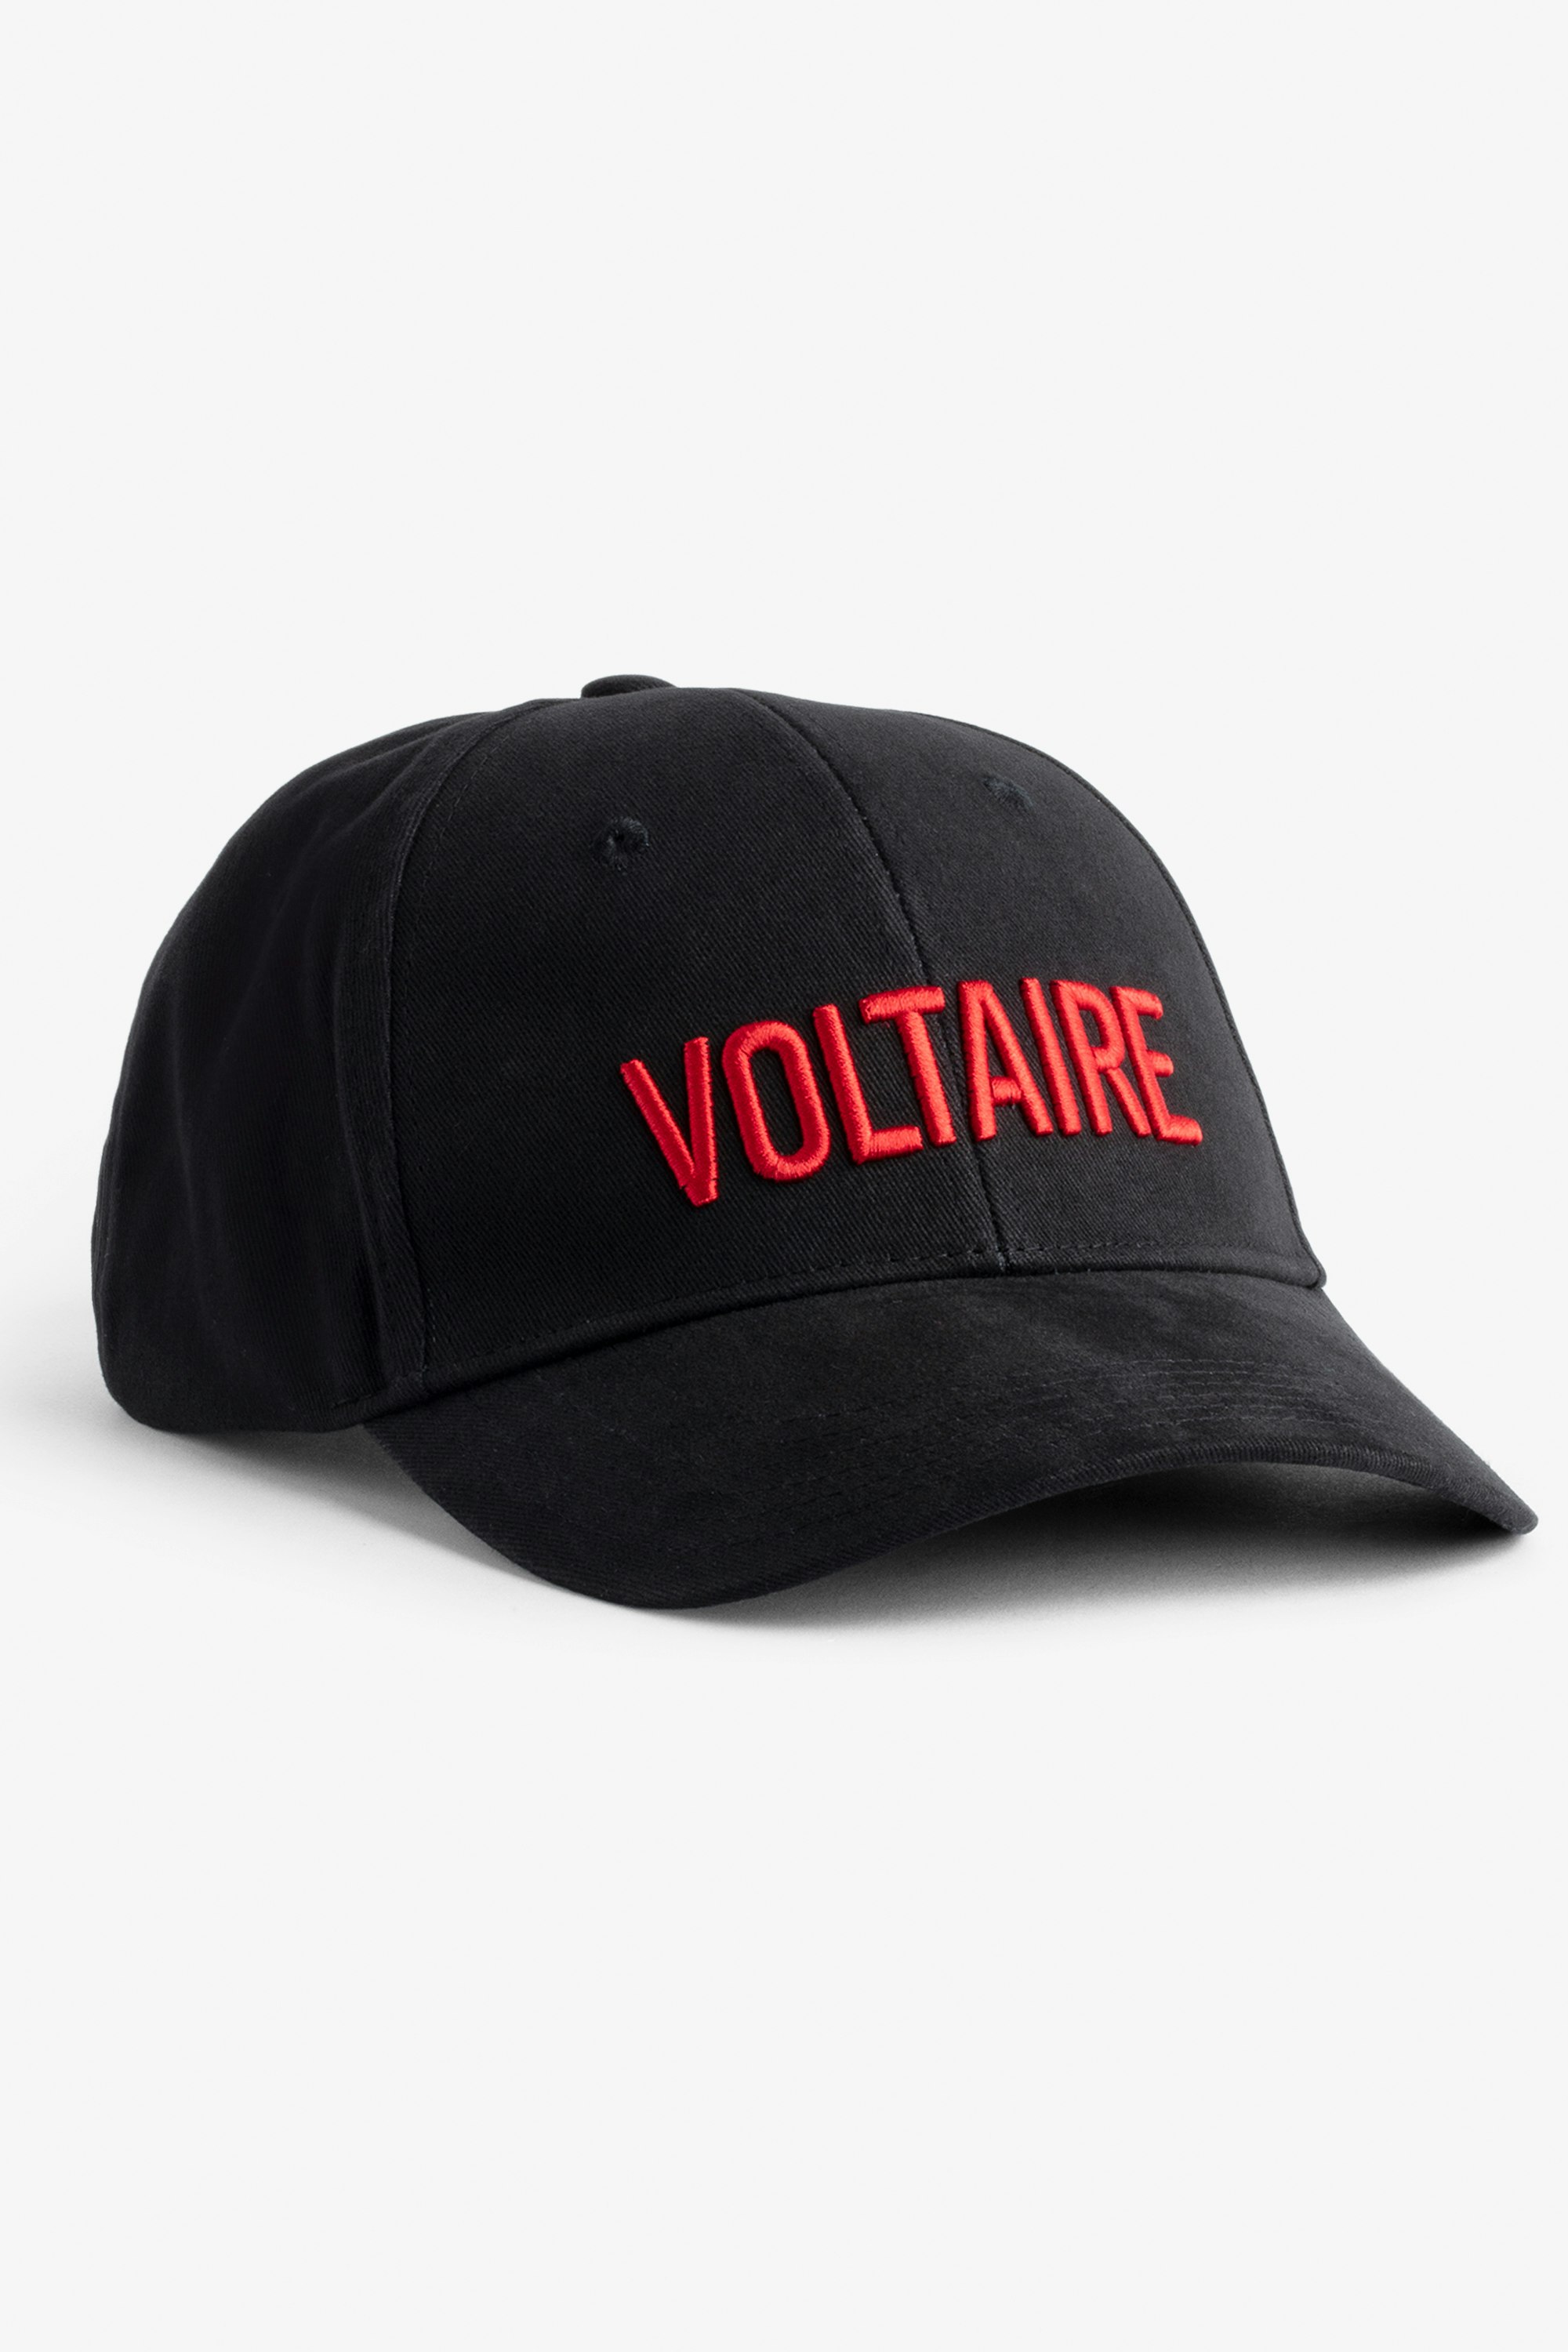 Klelia Voltaire Cap - Women's Voltaire embroidered black cotton cap.